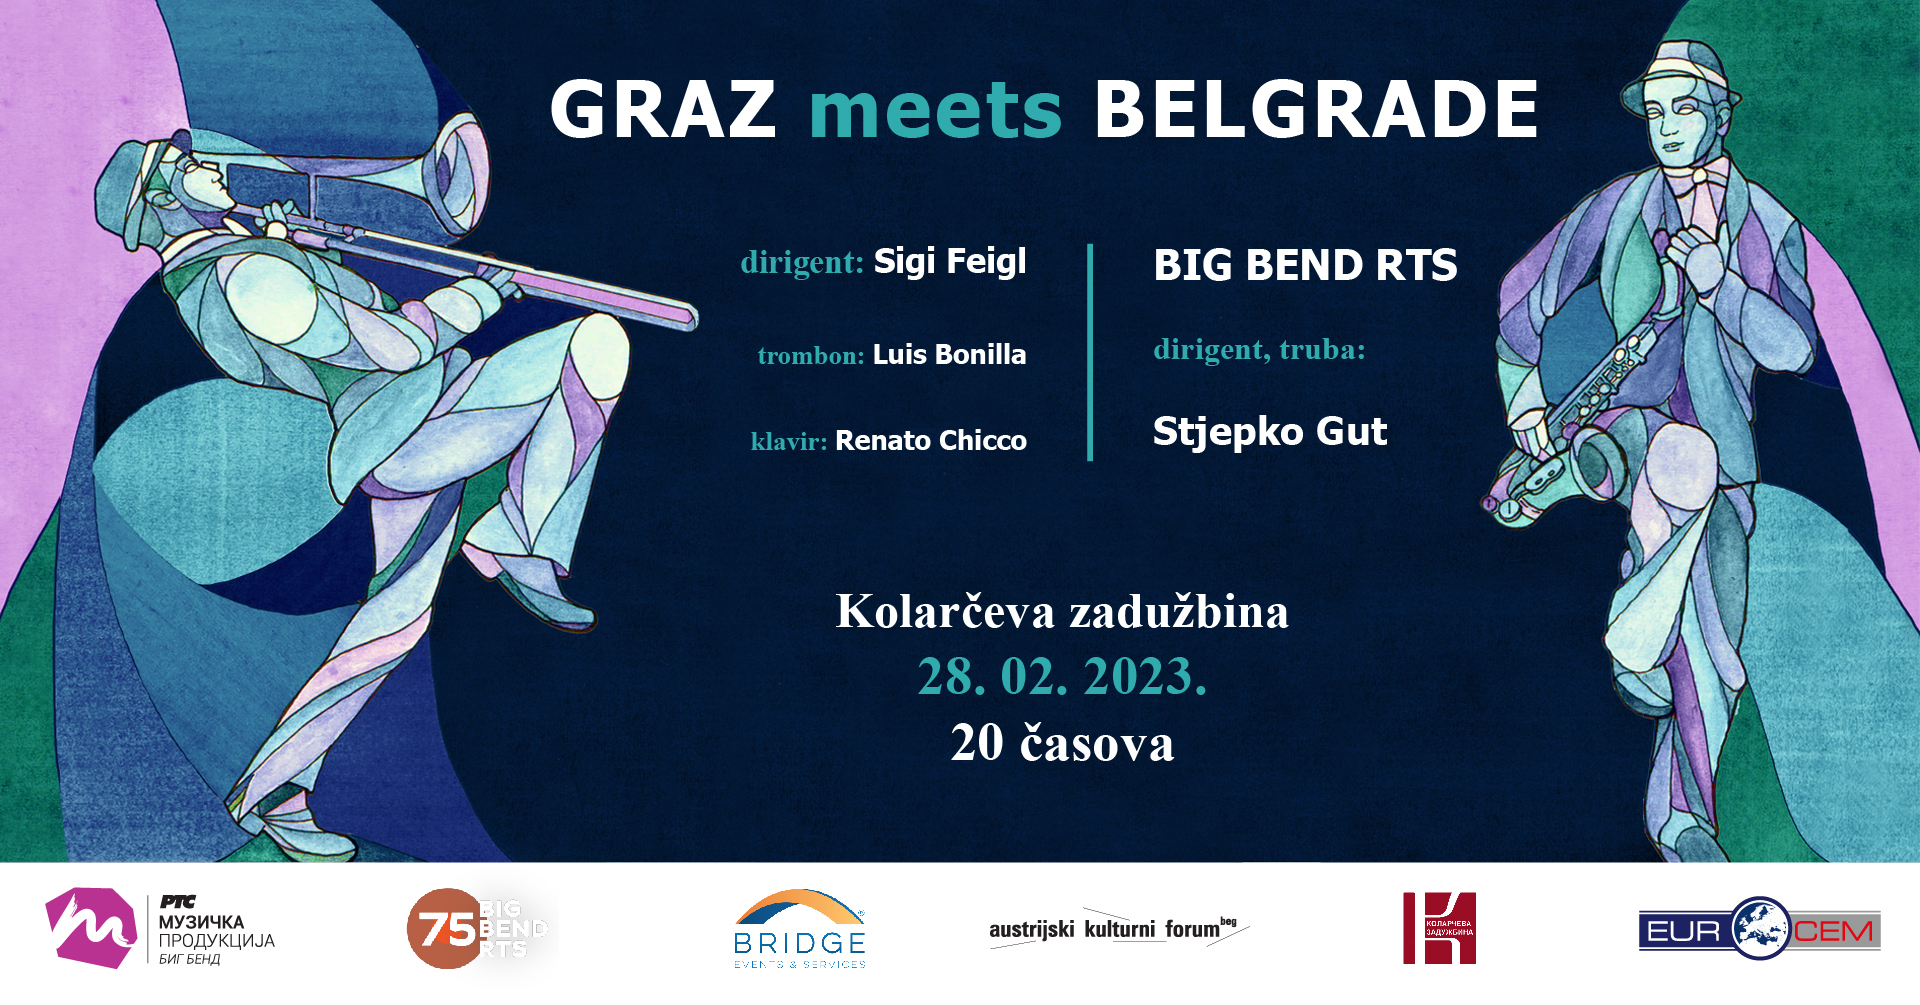 Graz meets Belgrade – Big Bend RTS, Stjepko Gut, Luis Bonilja, Renato Kiko i Zigi Fajgl 28.02.2023. Kolarac